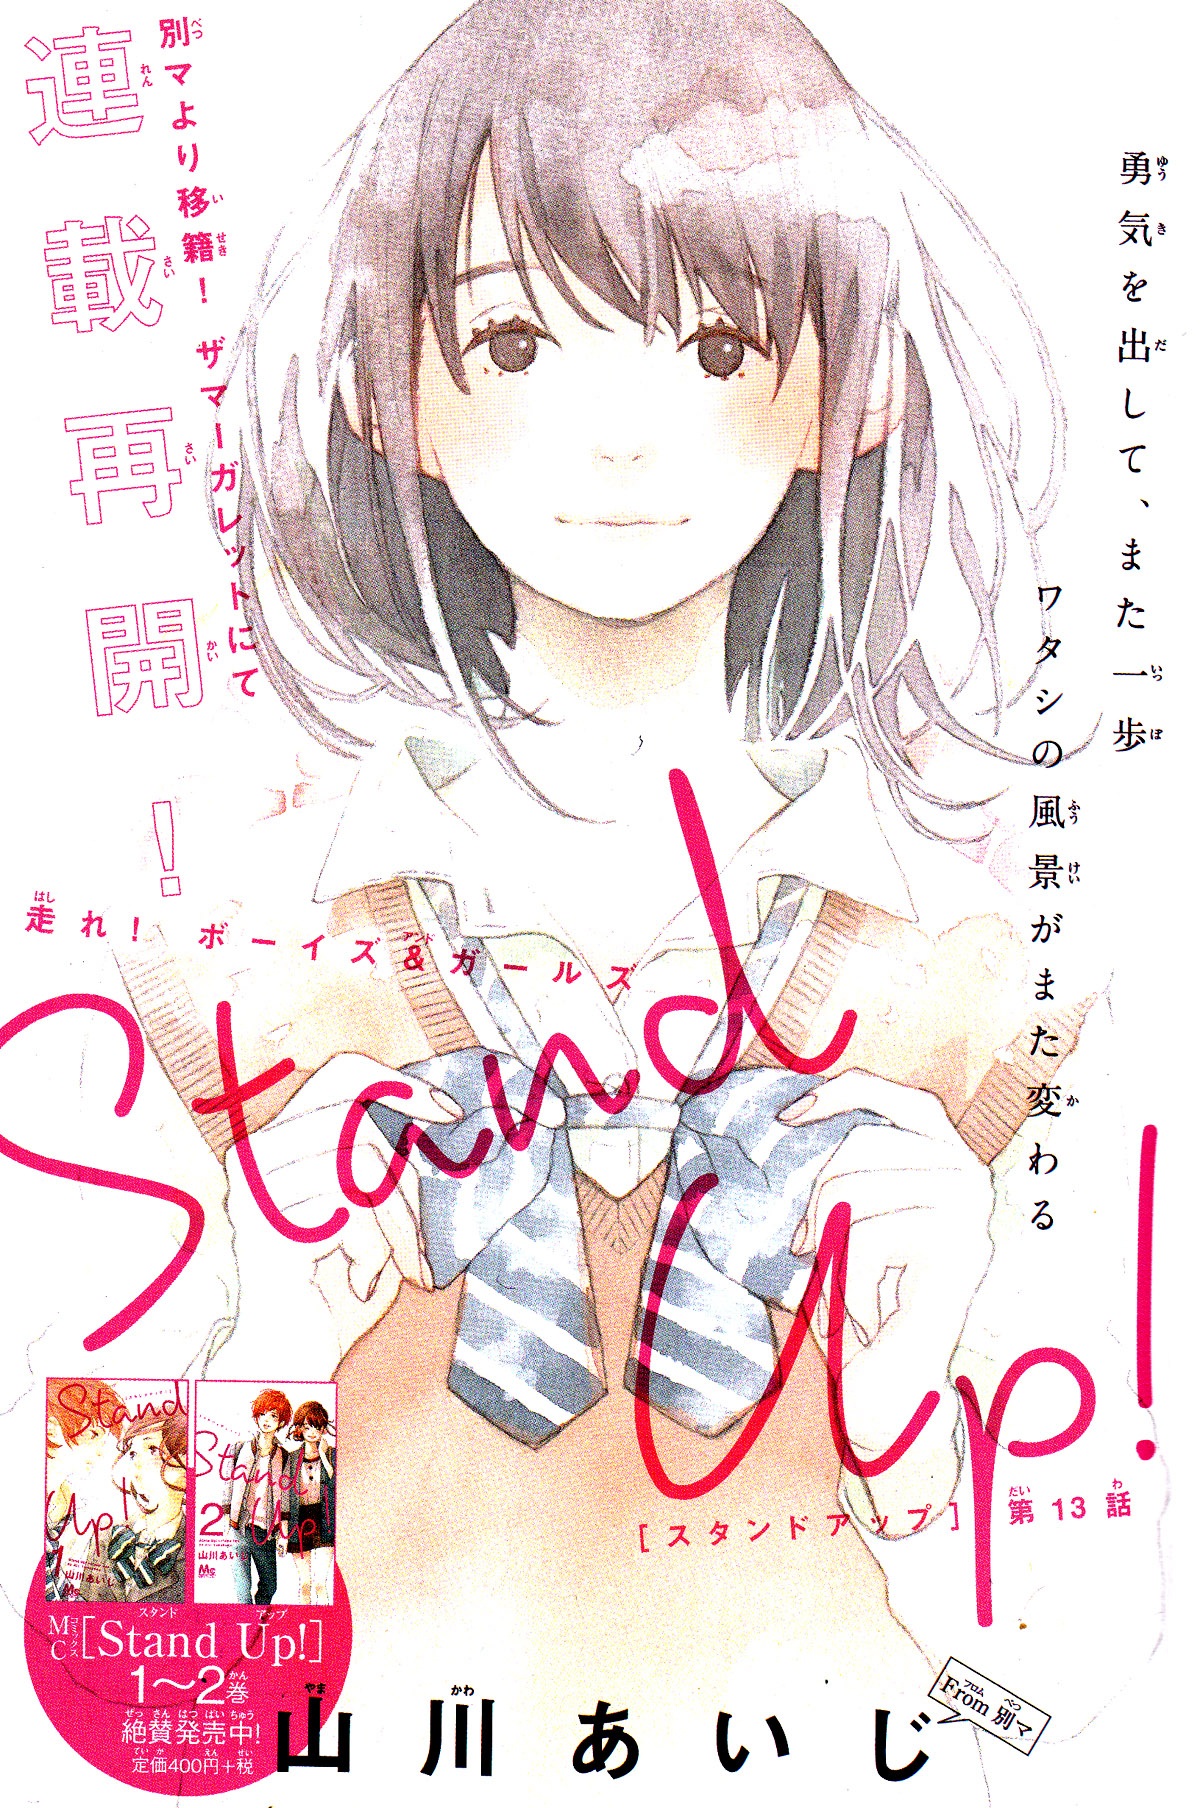 Stand Up! (YAMAKAWA Aiji) Vol. 3 Ch. 13